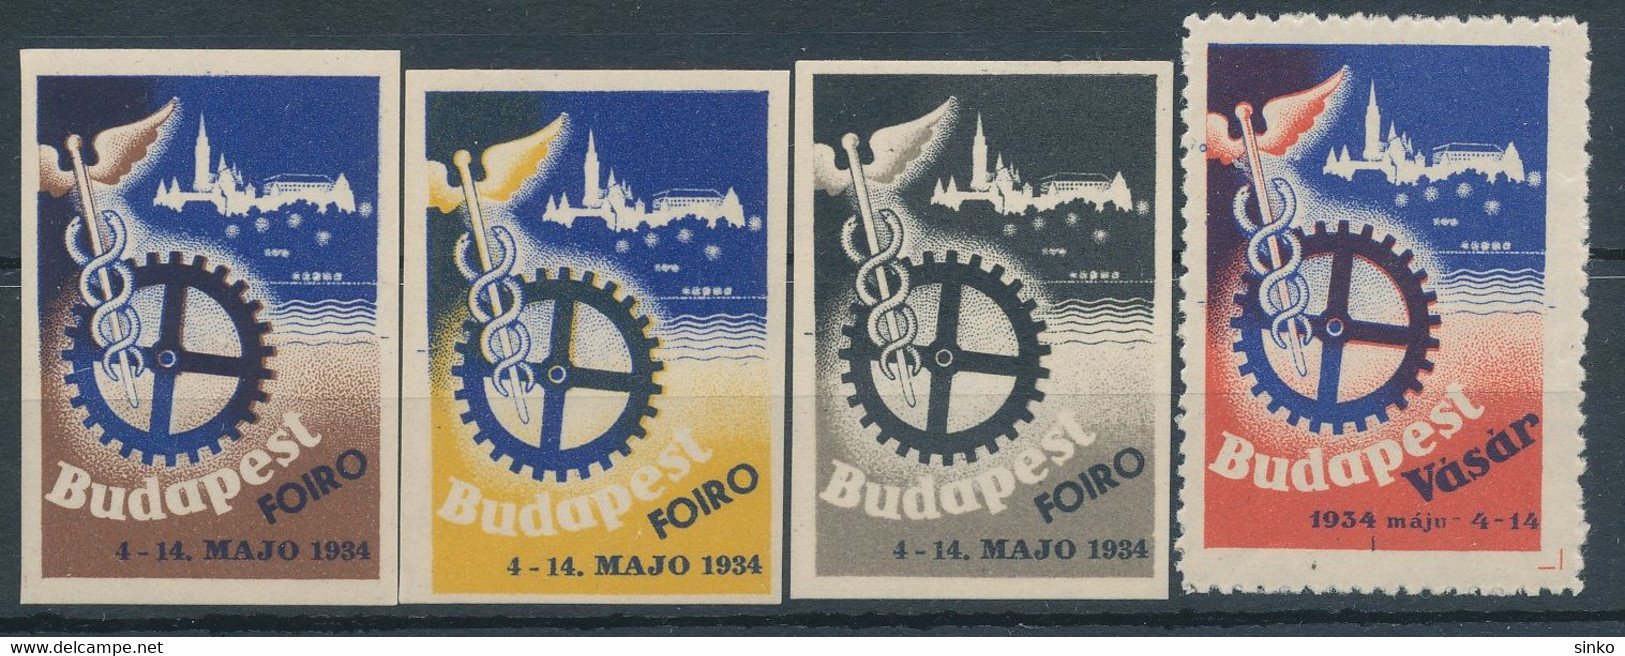 1934. Budapest Fair! - Feuillets Souvenir